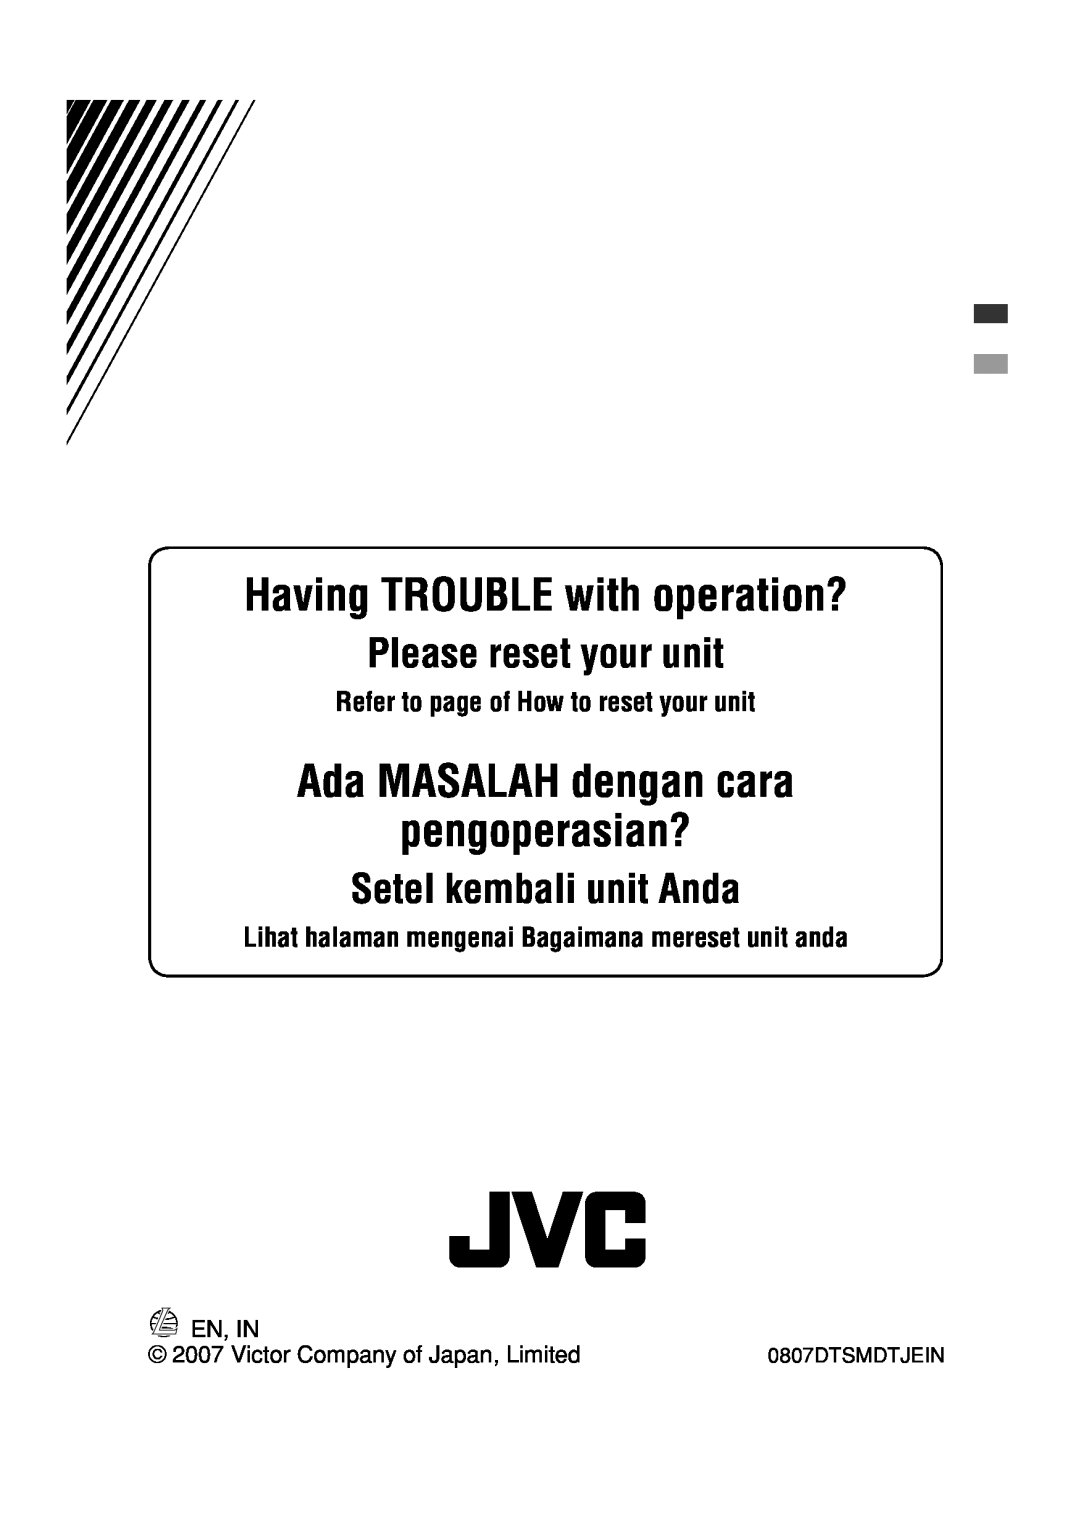 JVC MA372IEN Ada MASALAH dengan cara pengoperasian?, Setel kembali unit Anda, En, In, Having TROUBLE with operation? 